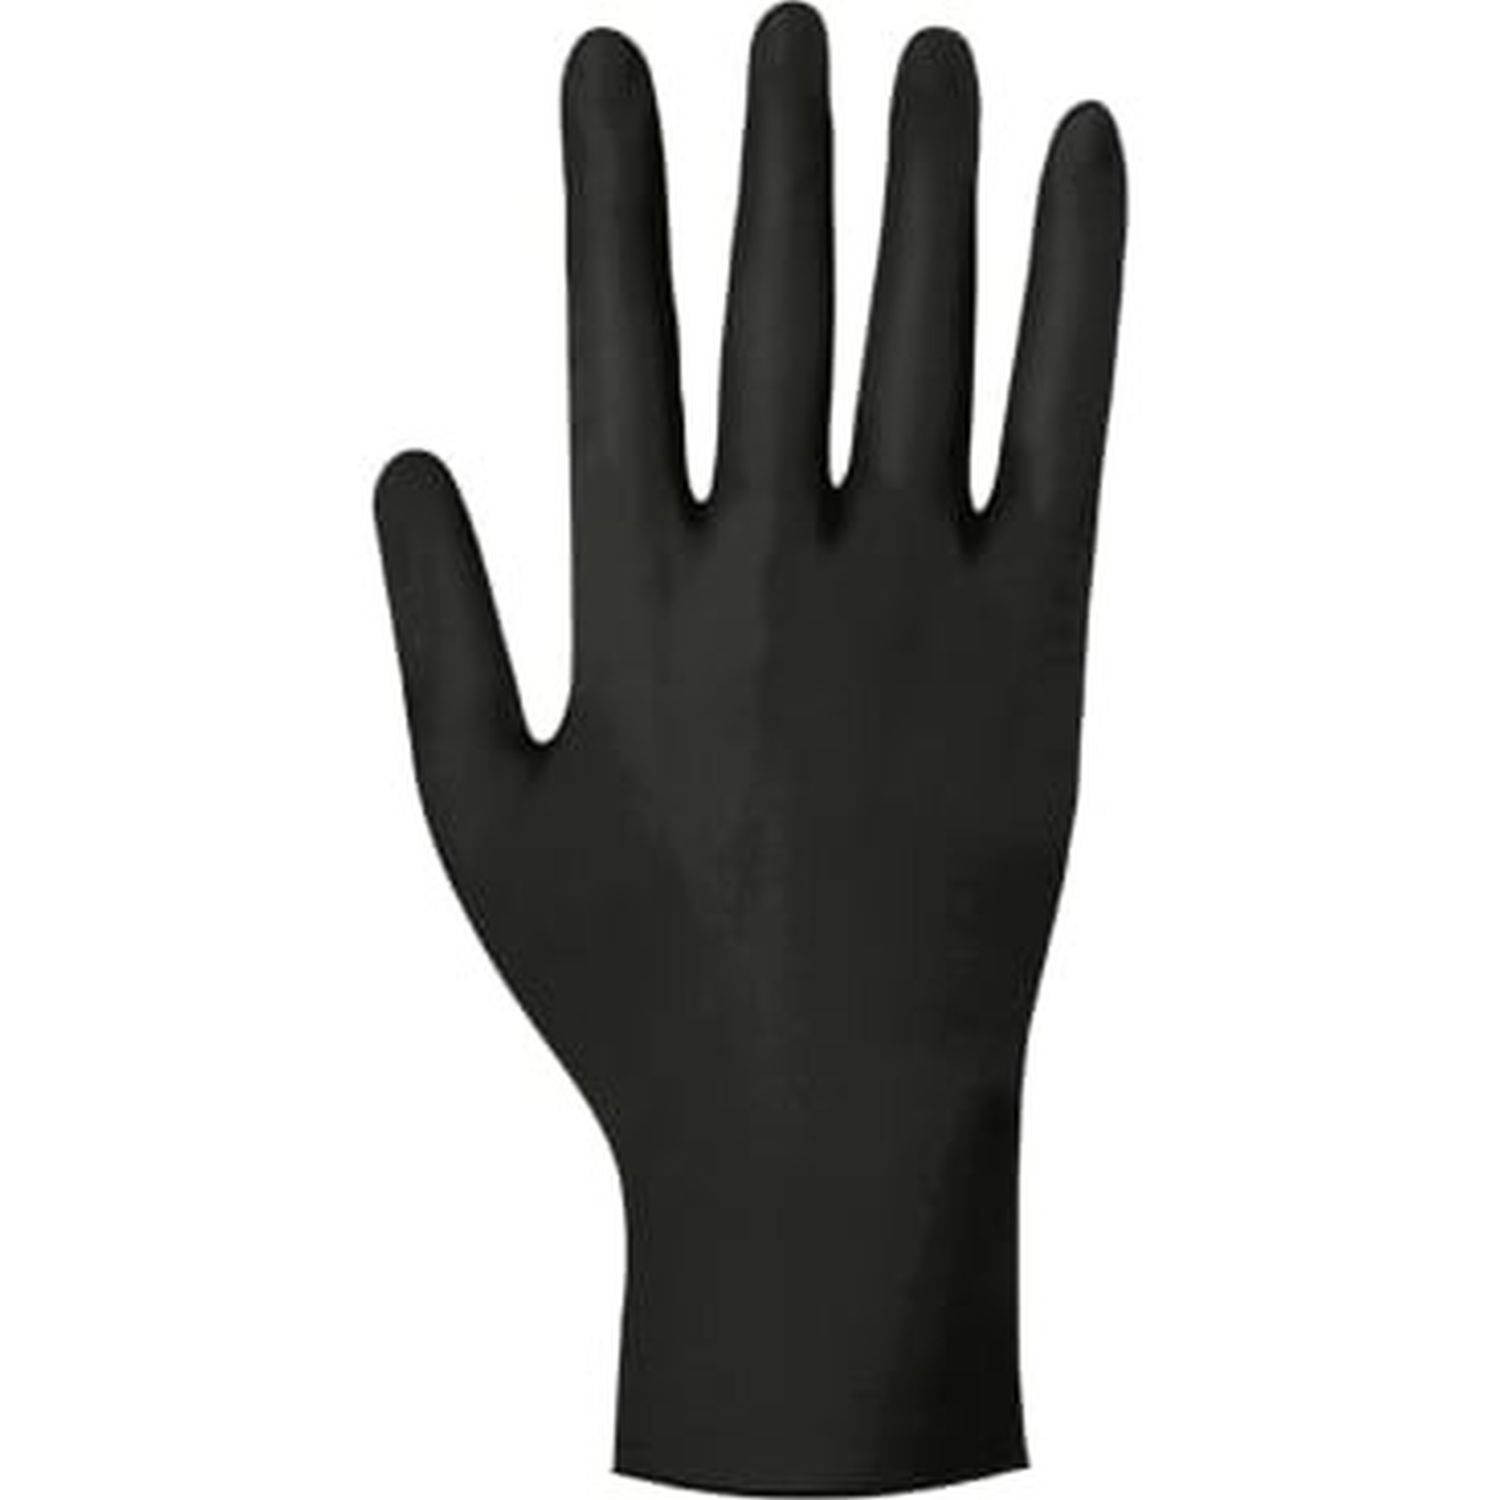 Einmalhandschuhe Nitril 247001310, Größe XL, 100 Stück, puderfrei, schwarz